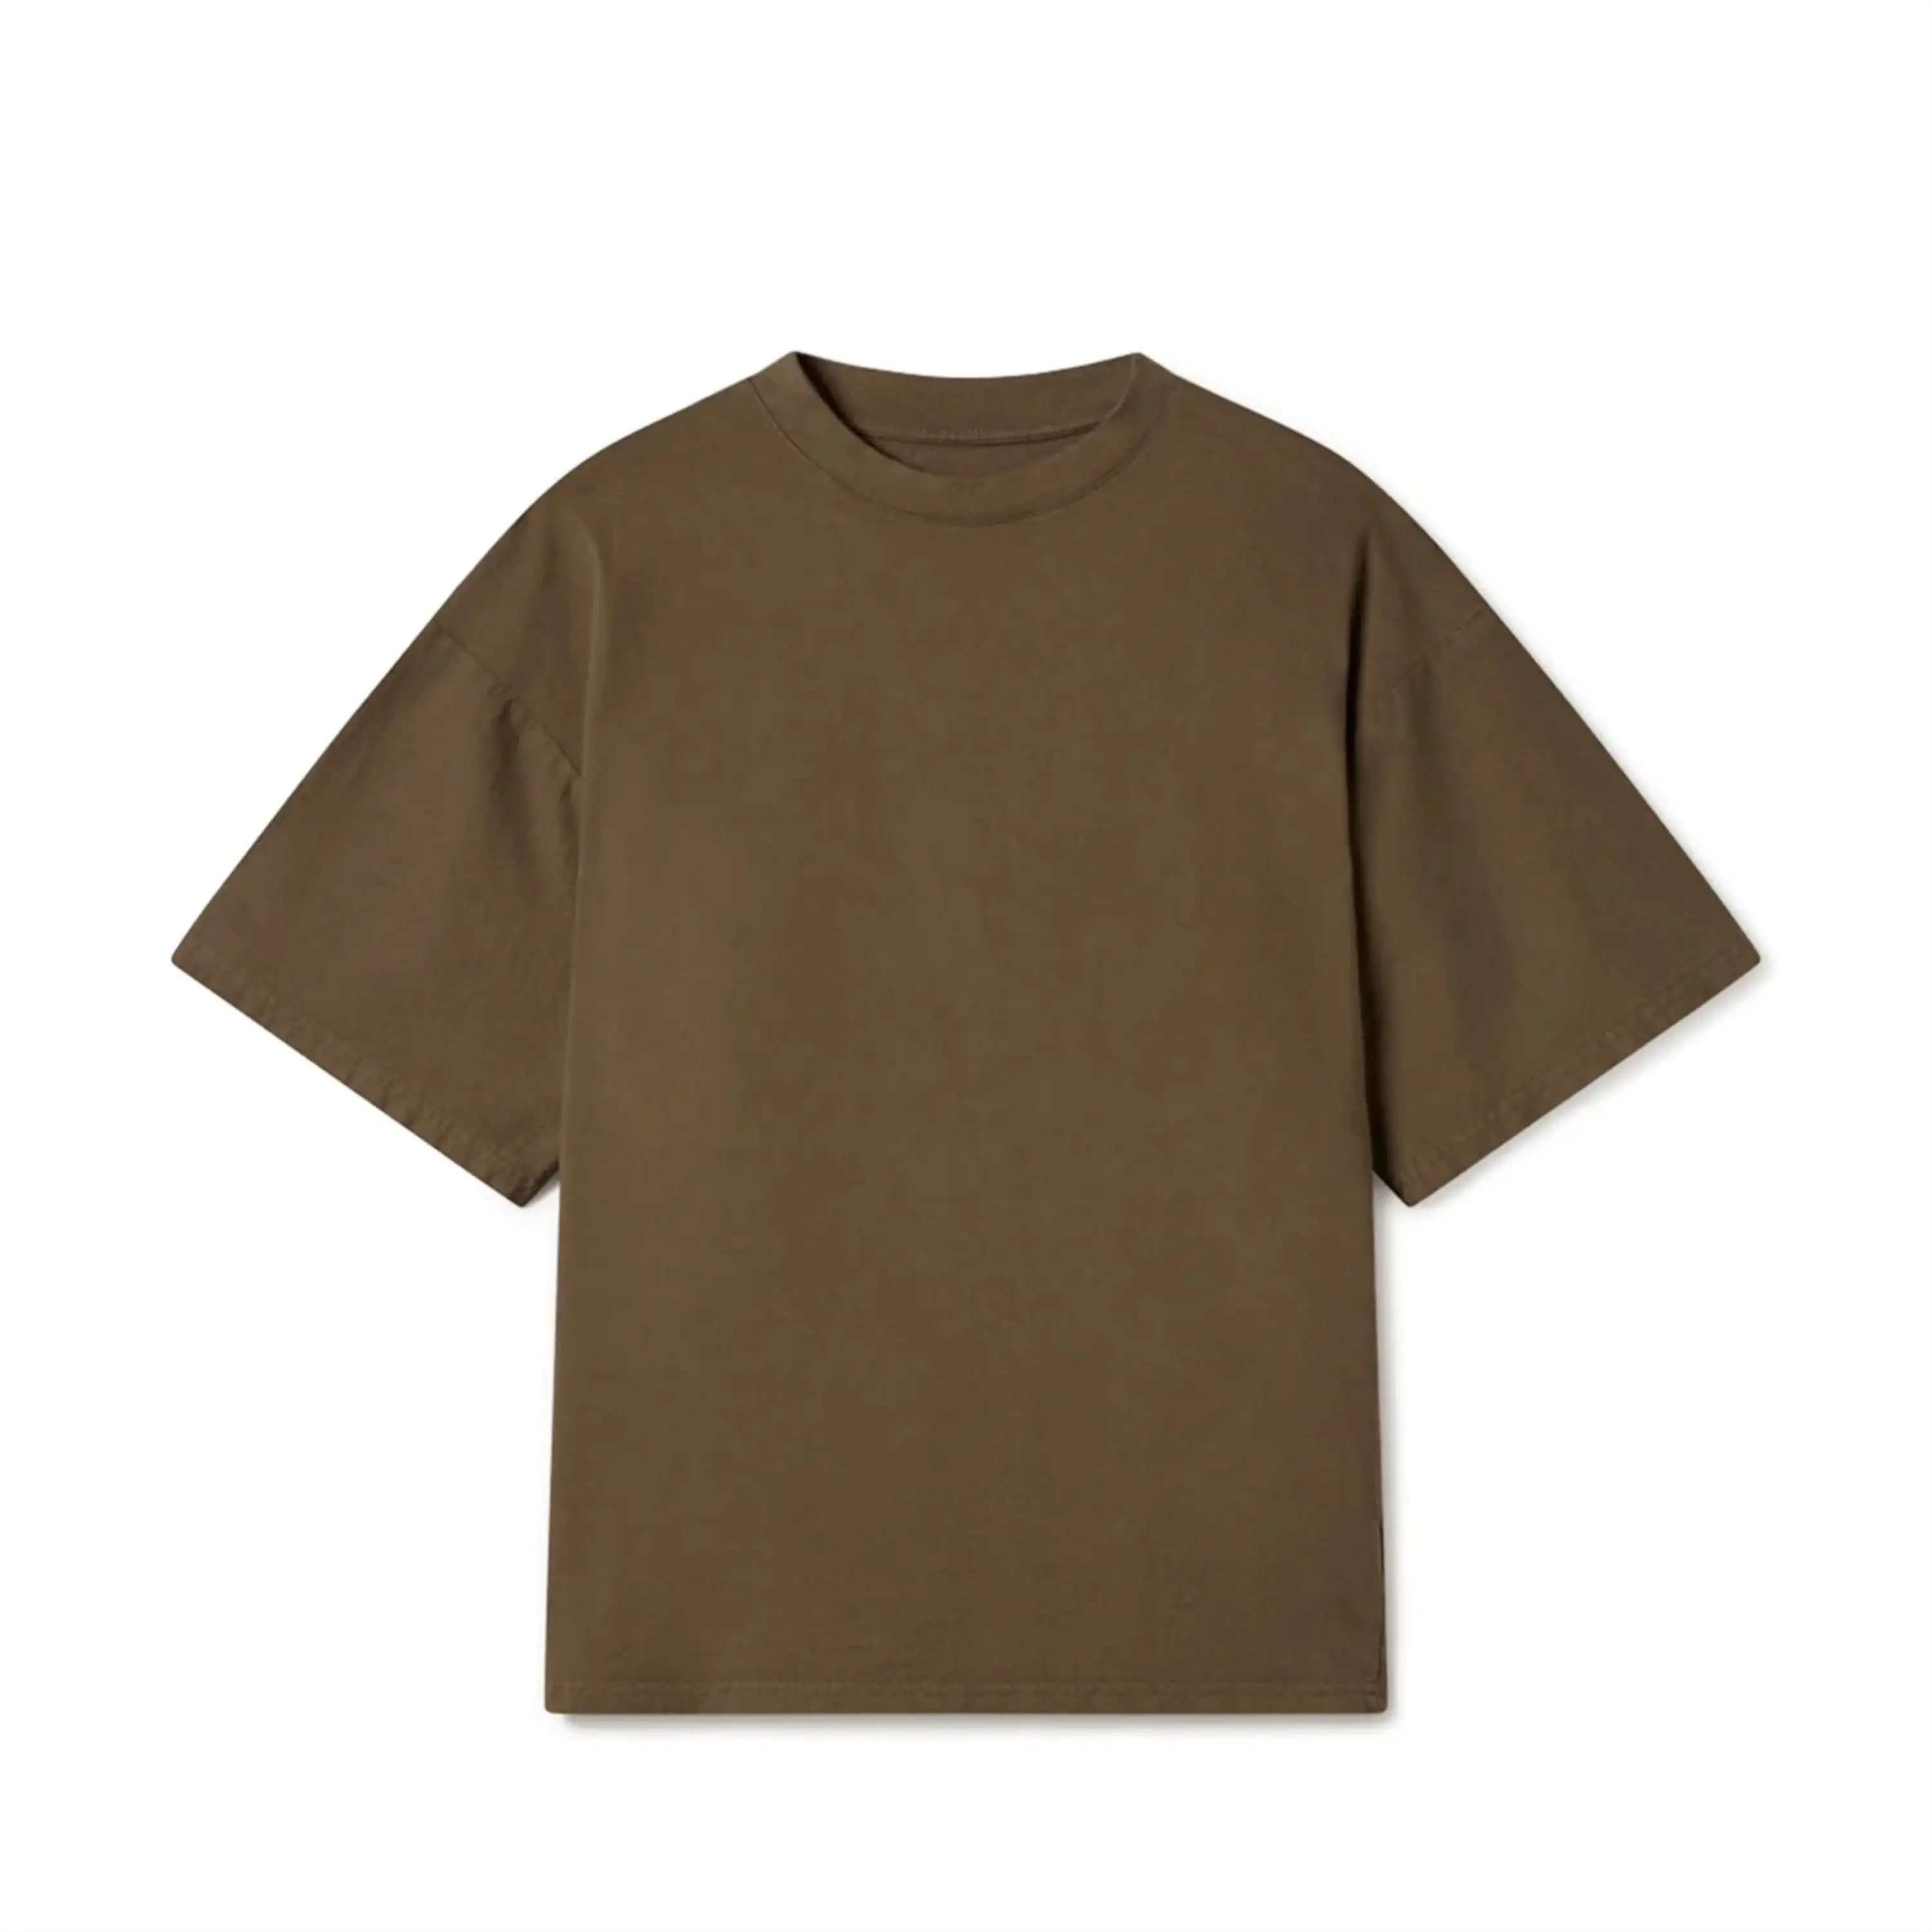 スーパーソフトブランクTシャツ: 180gsm綿100% リングスパンコーム、カスタムロゴ印刷、男性用高品質OEMおよびODM